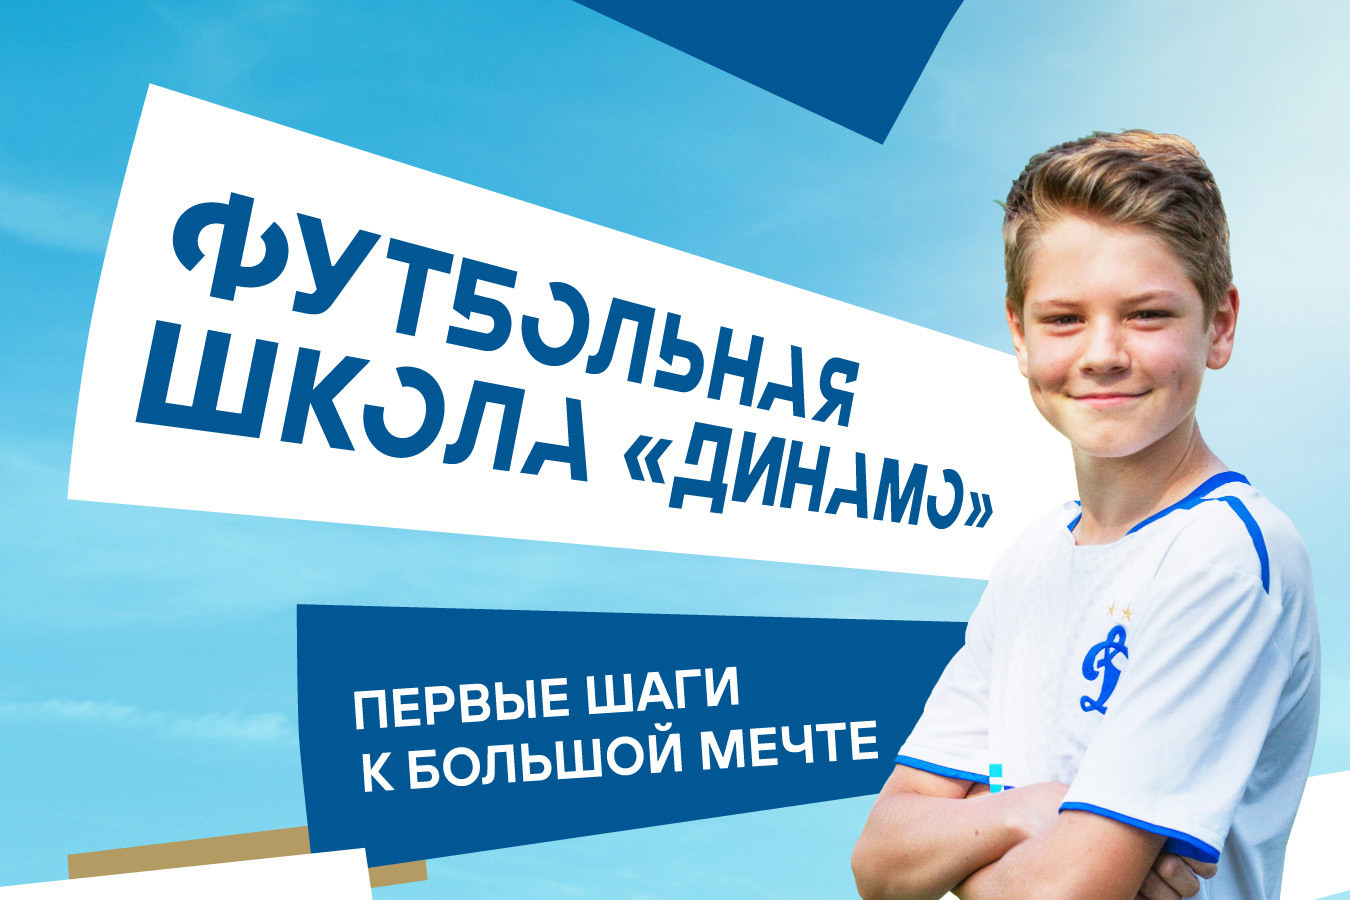 «Динамо» представляет проект франшиз футбольных школ